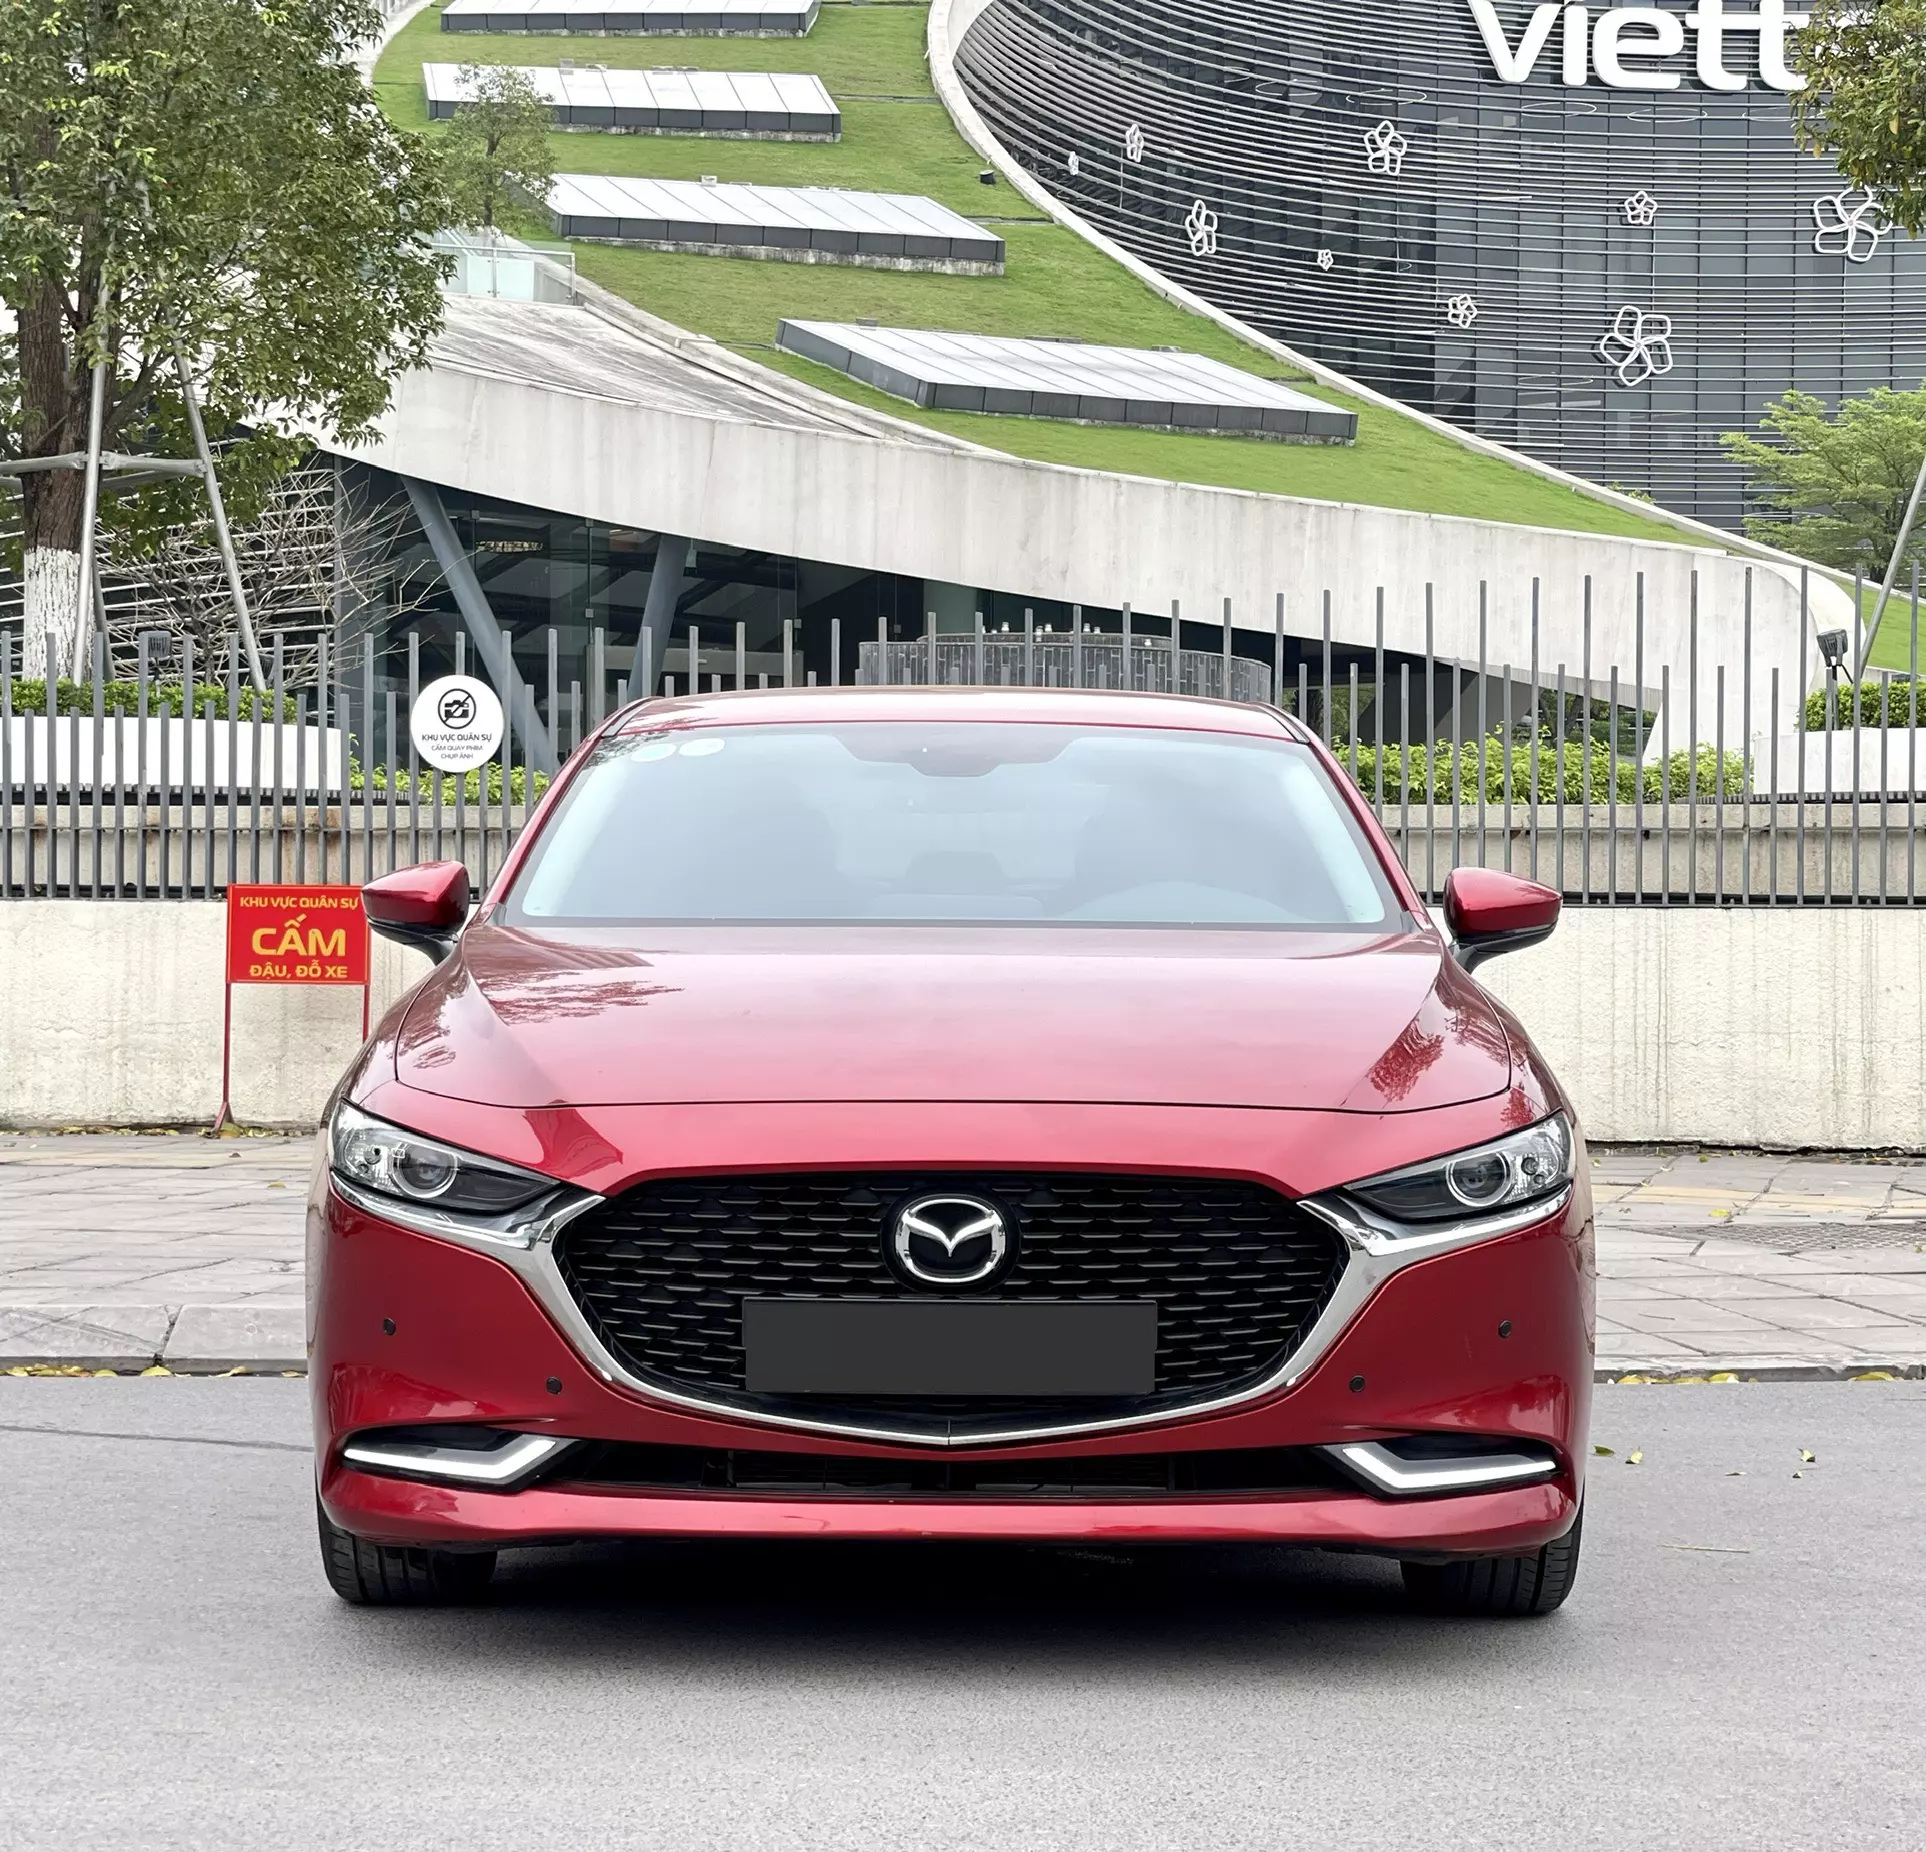 Chính chủ cần bán xe Mazda 3-1.5 luxury đỏ phale -0